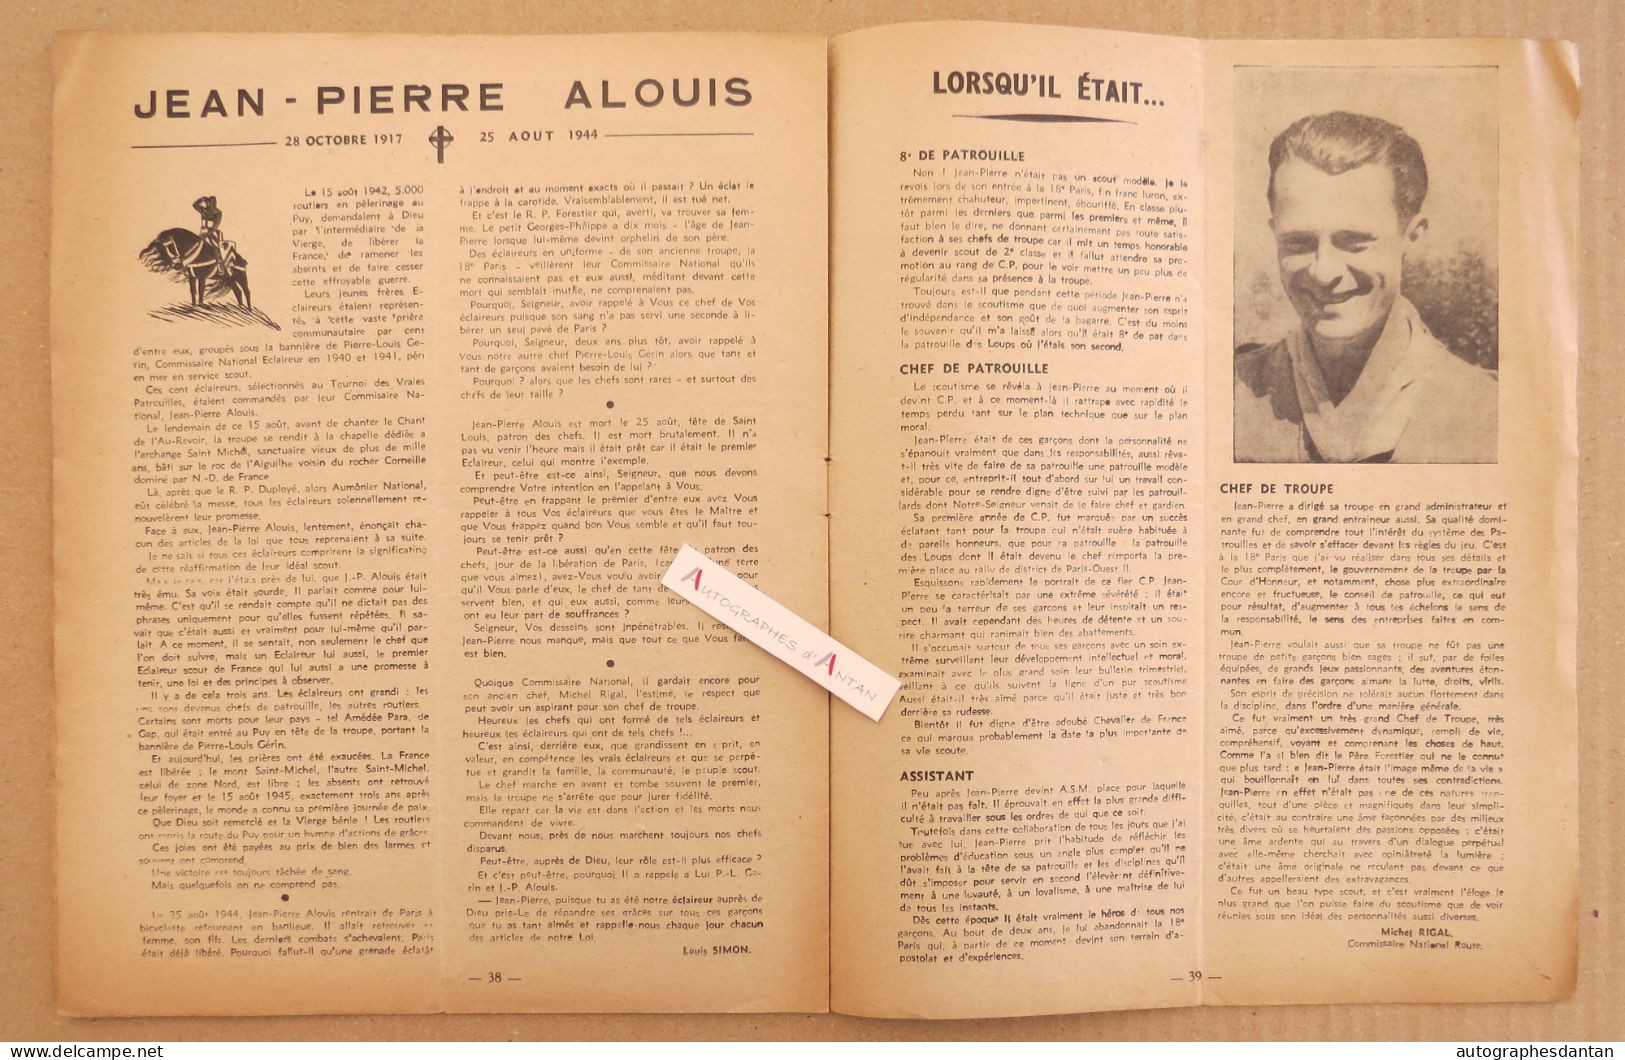 ● L'ESCOUTE 1945 - N°201 - La Patrouille Des Légendes (Dachs) - Jean Pierre Alouis - Cf Mes 6 Photos - Scoutisme - Other & Unclassified